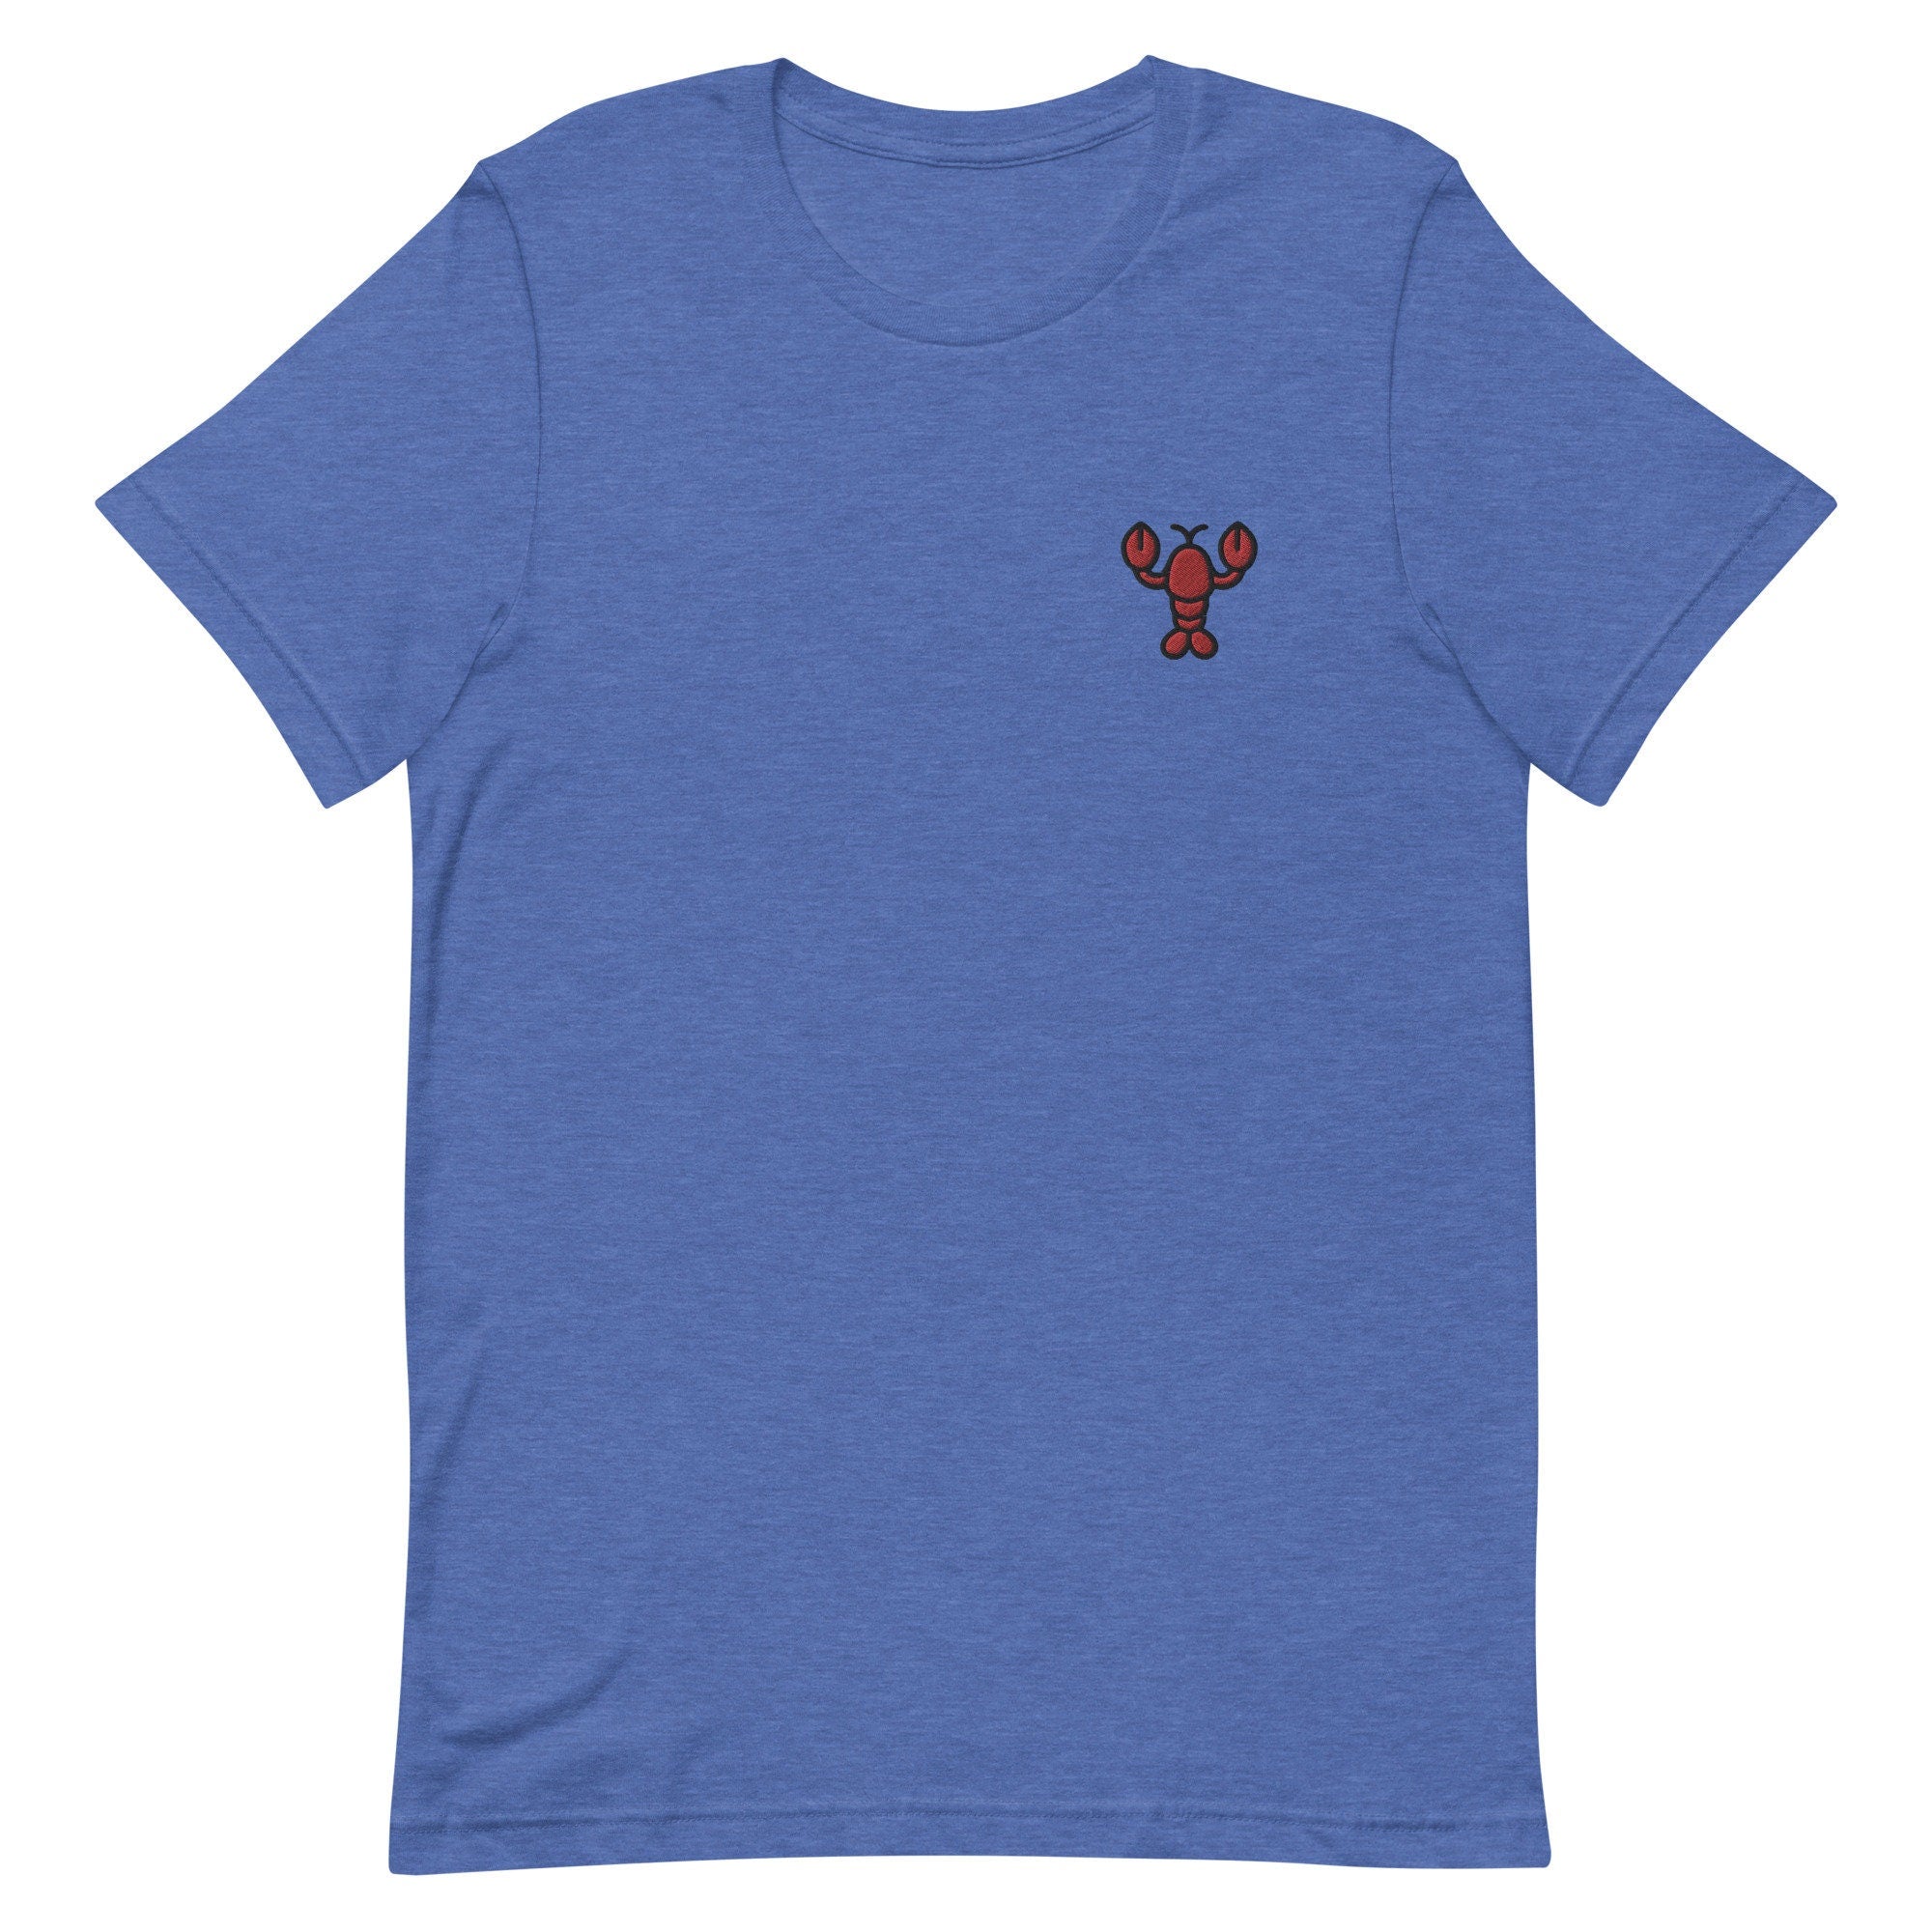 Lobster Premium Men's T-Shirt, Embroidered Men's T-Shirt Gift for Boyfriend, Men's Short Sleeve Shirt - Multiple Colors